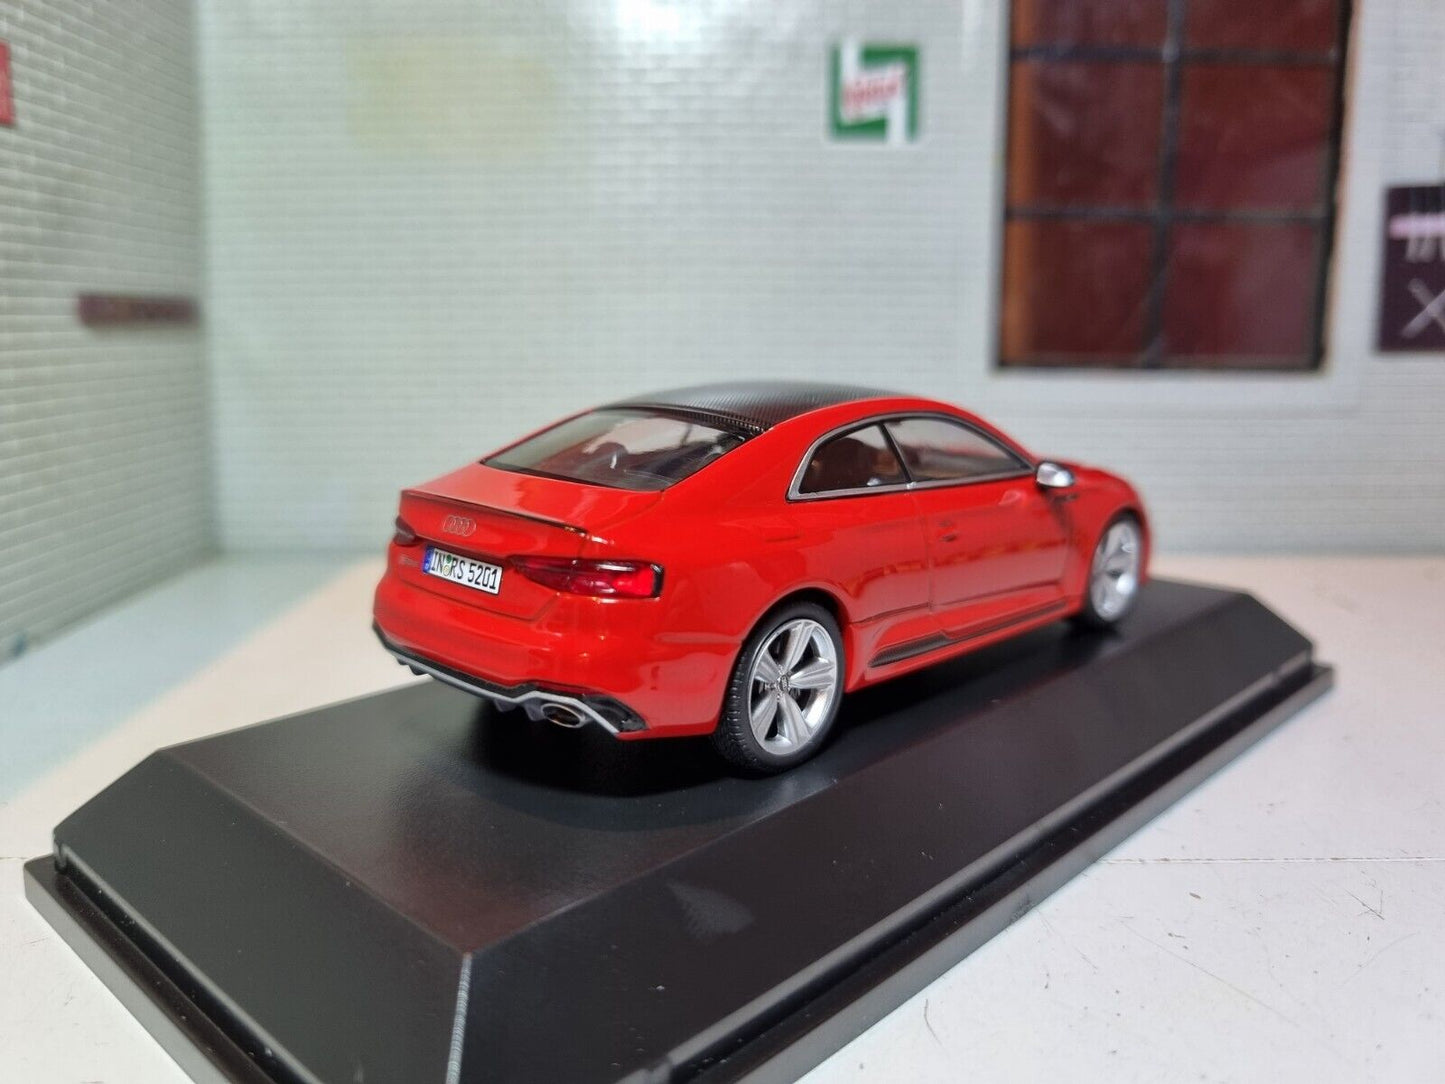 Audi 2017 RS5 Coupé Ex-Händler-Display 1:43